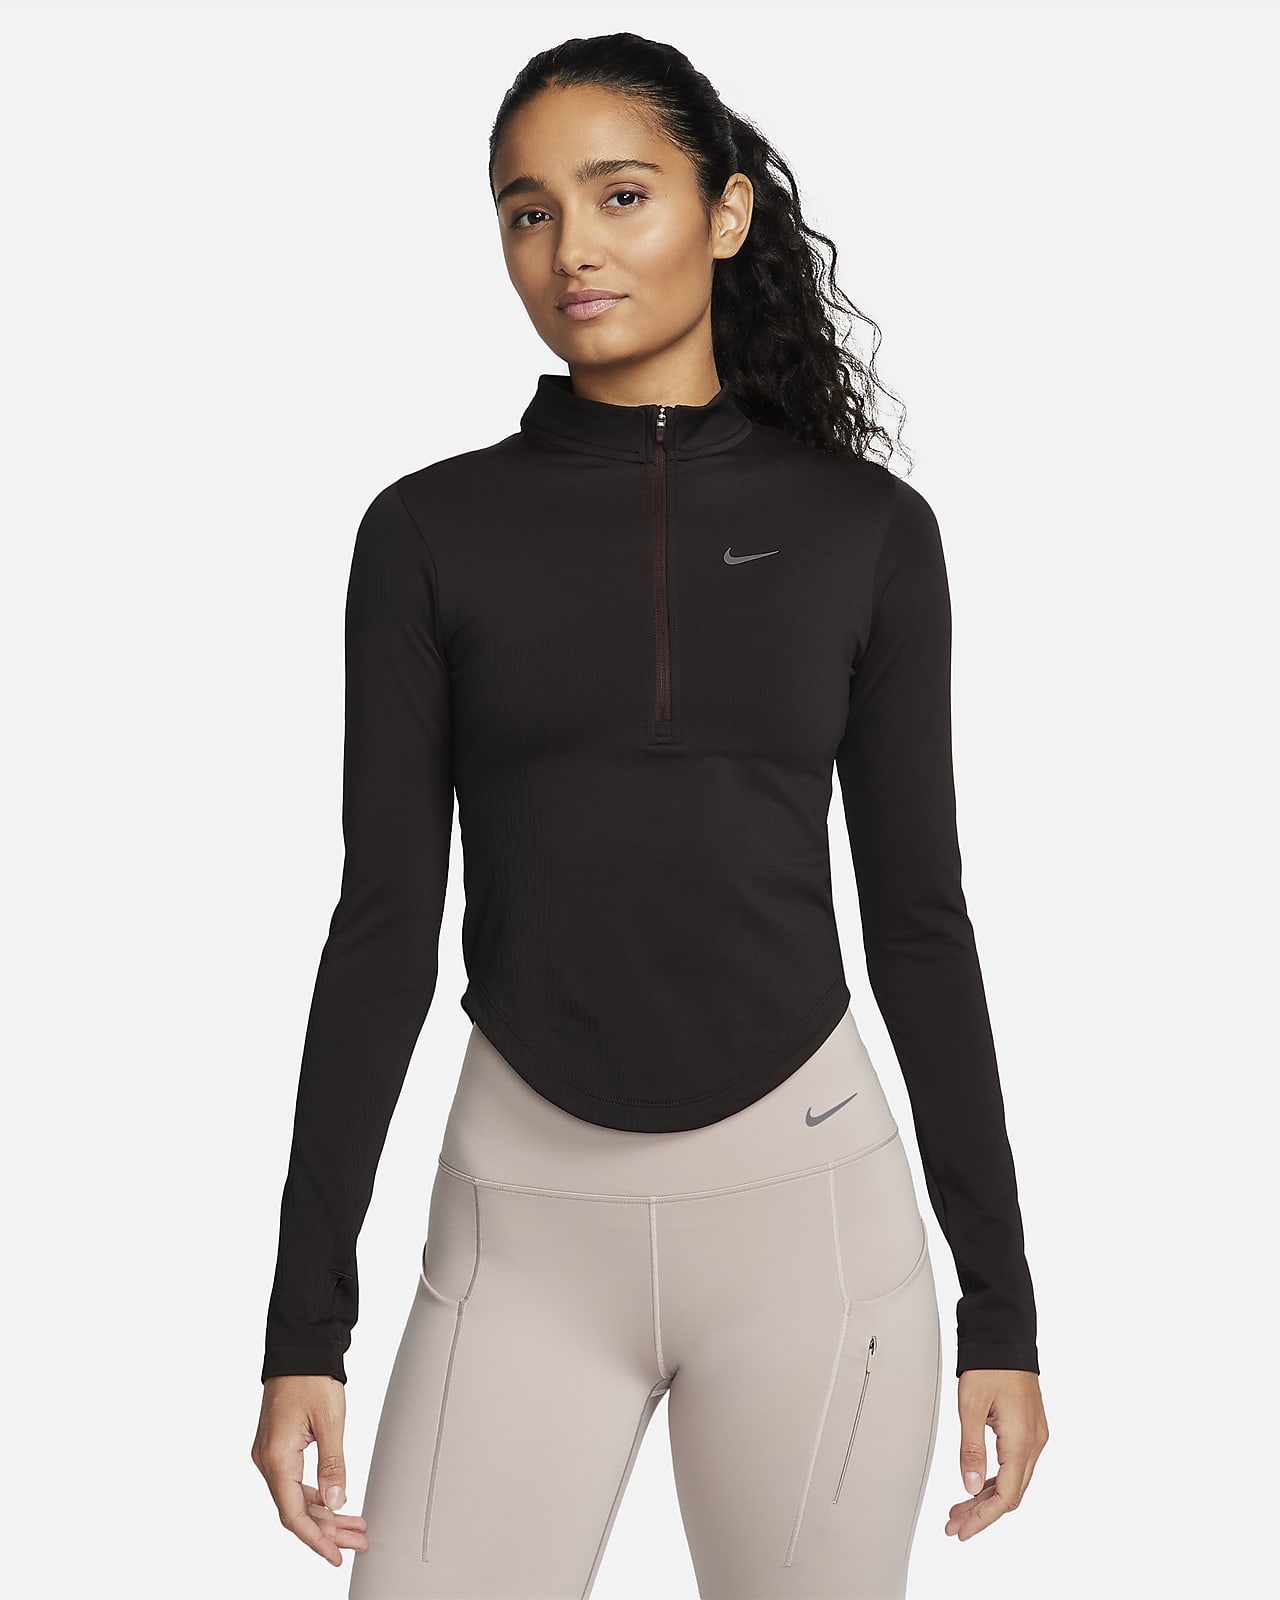 Camada intermédia com fecho até meio Nike Dri-FIT ADV Running Division para mulher